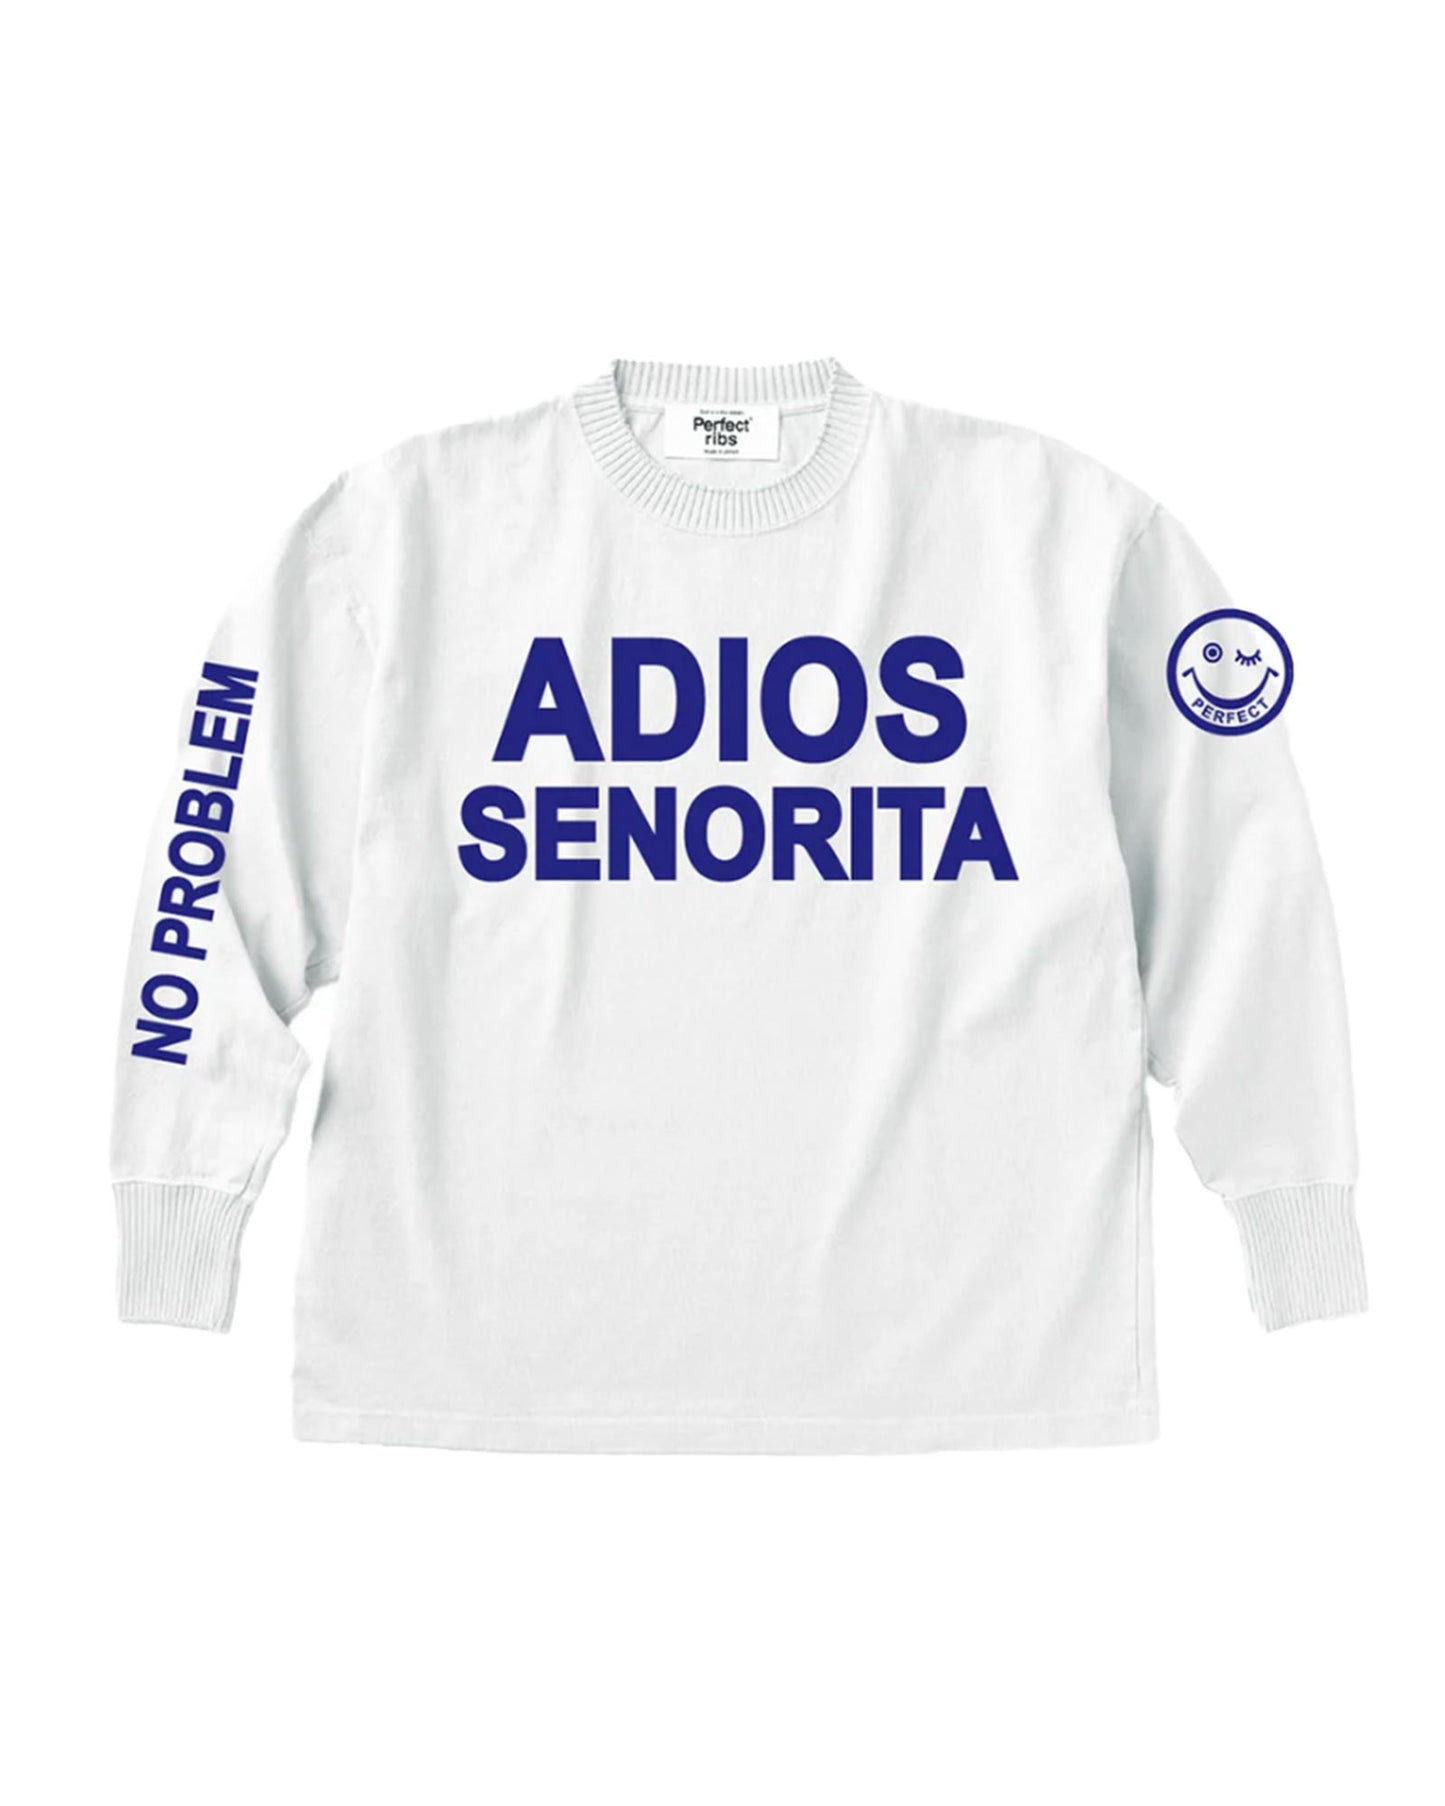 パーフェクトリブス/(ADIOS SENORITA & HAPPY EXPLORE) Side Slit Long Sleeve T Shirts/ロンT/White